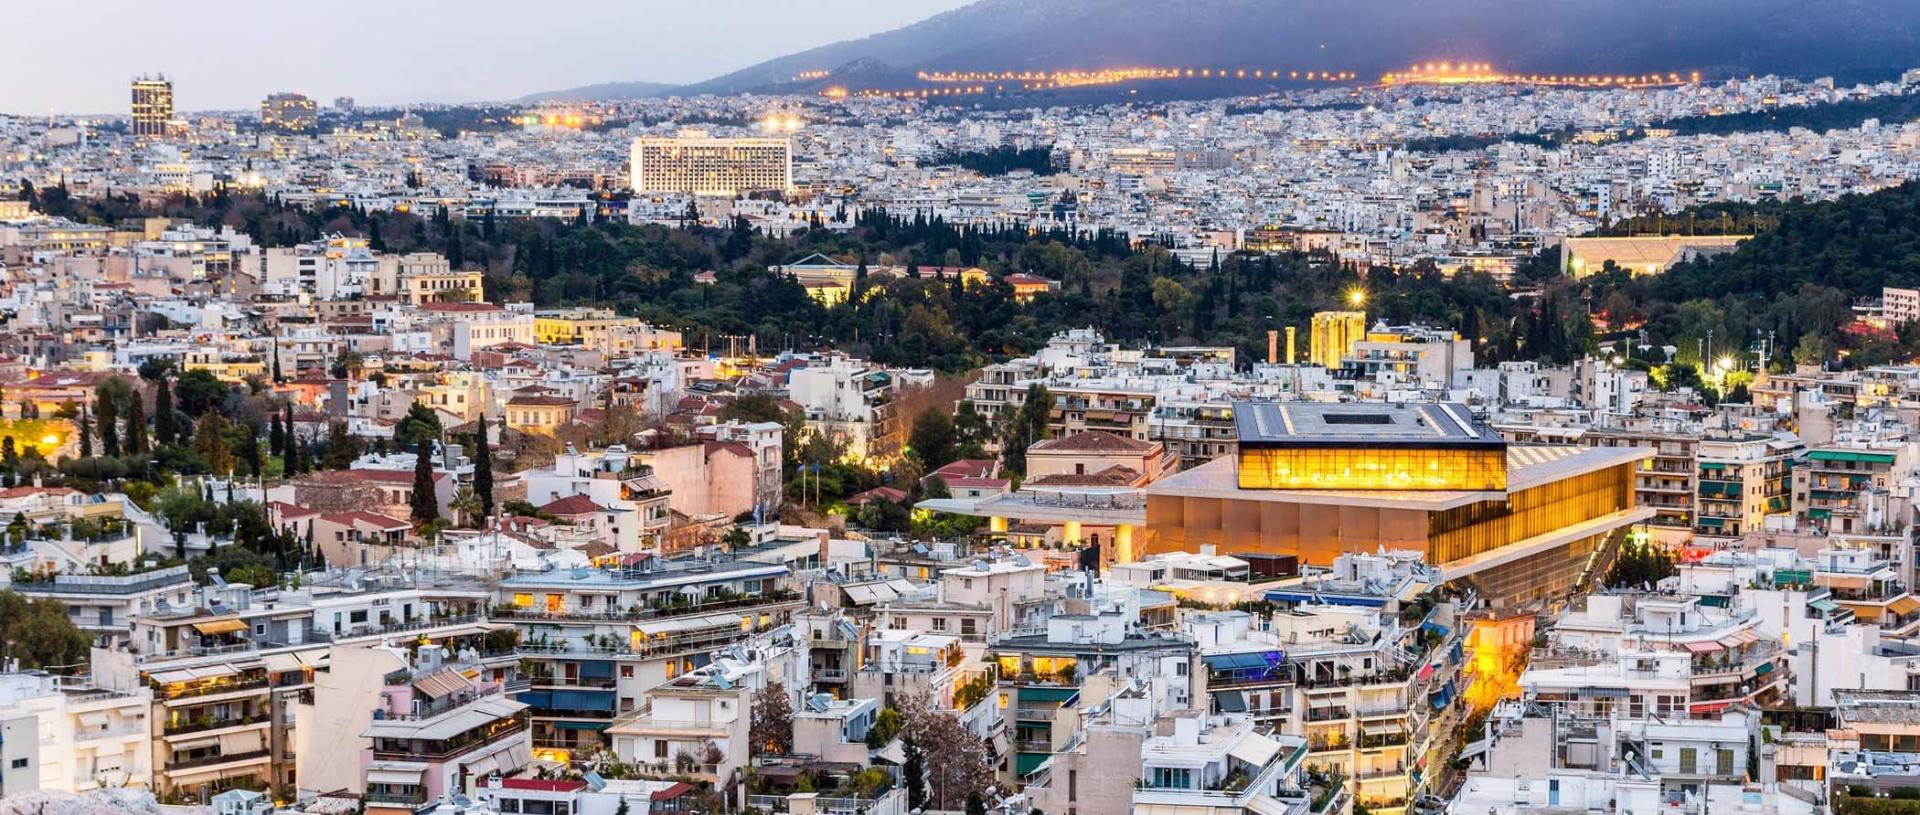 Airbnb και Golden Visa αλλάζουν τα πάντα στην αγορά ακινήτων της Αθήνας